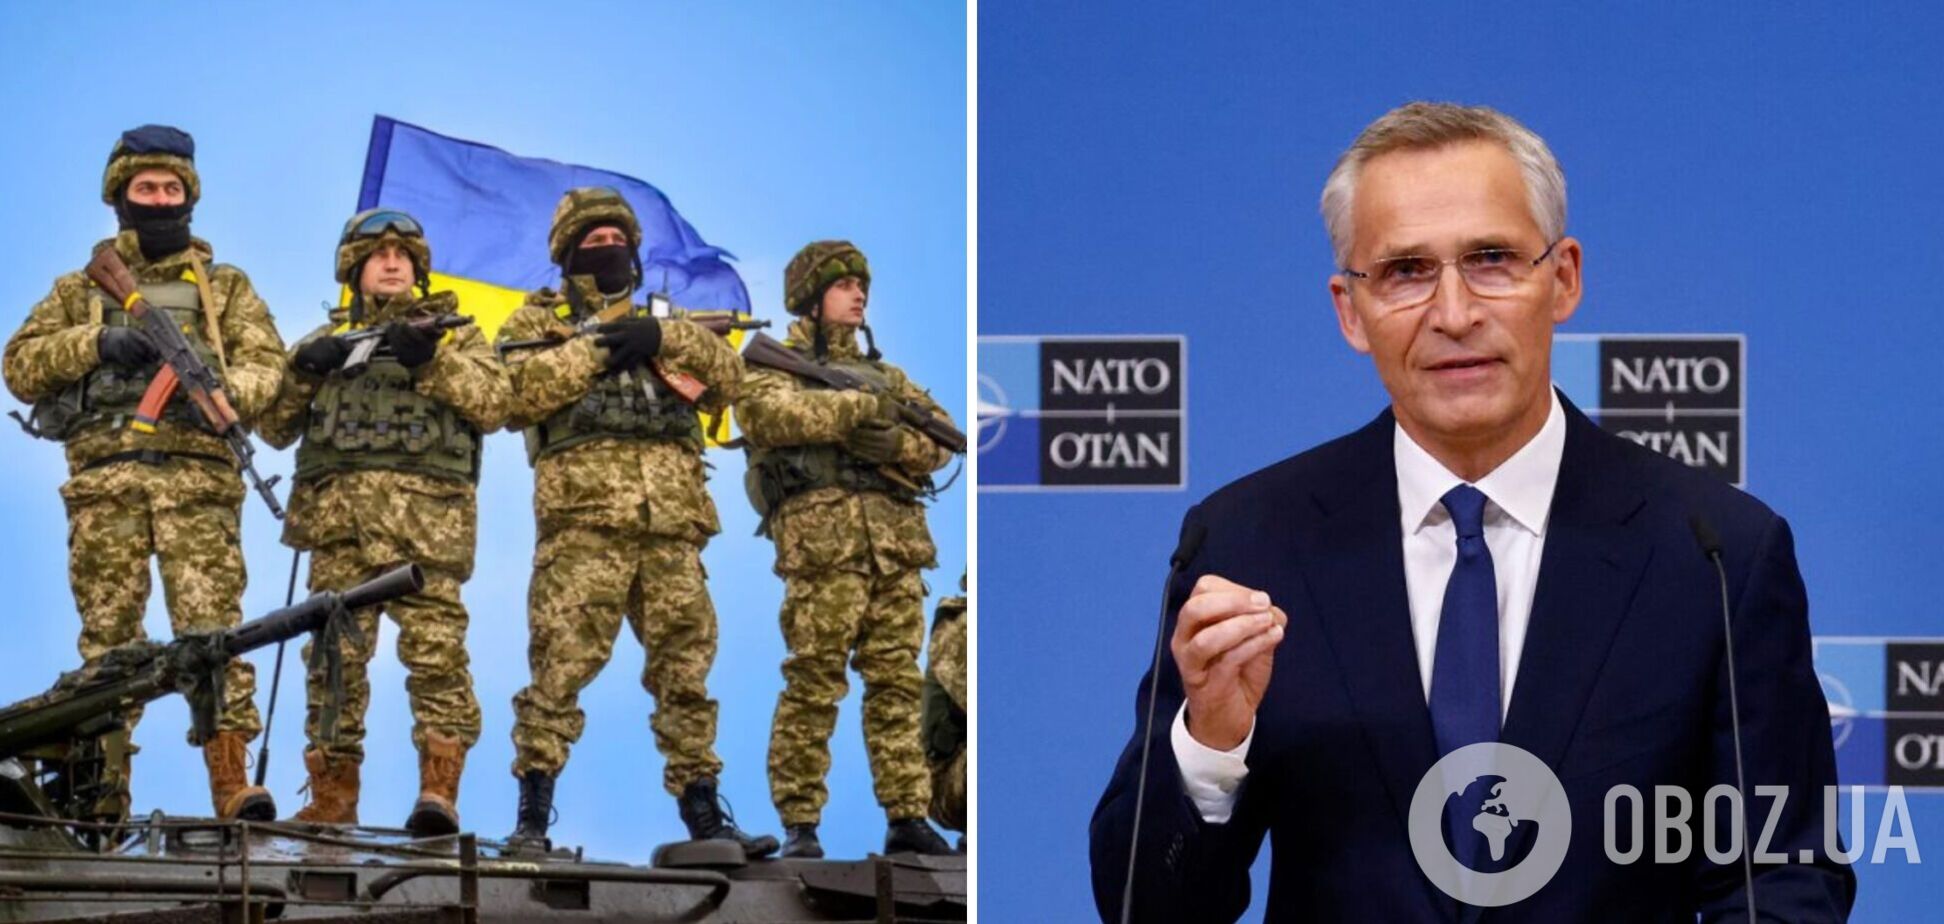 Україна вистояла, зокрема, завдяки розбудові ЗСУ спільно з НАТО, – Столтенберг